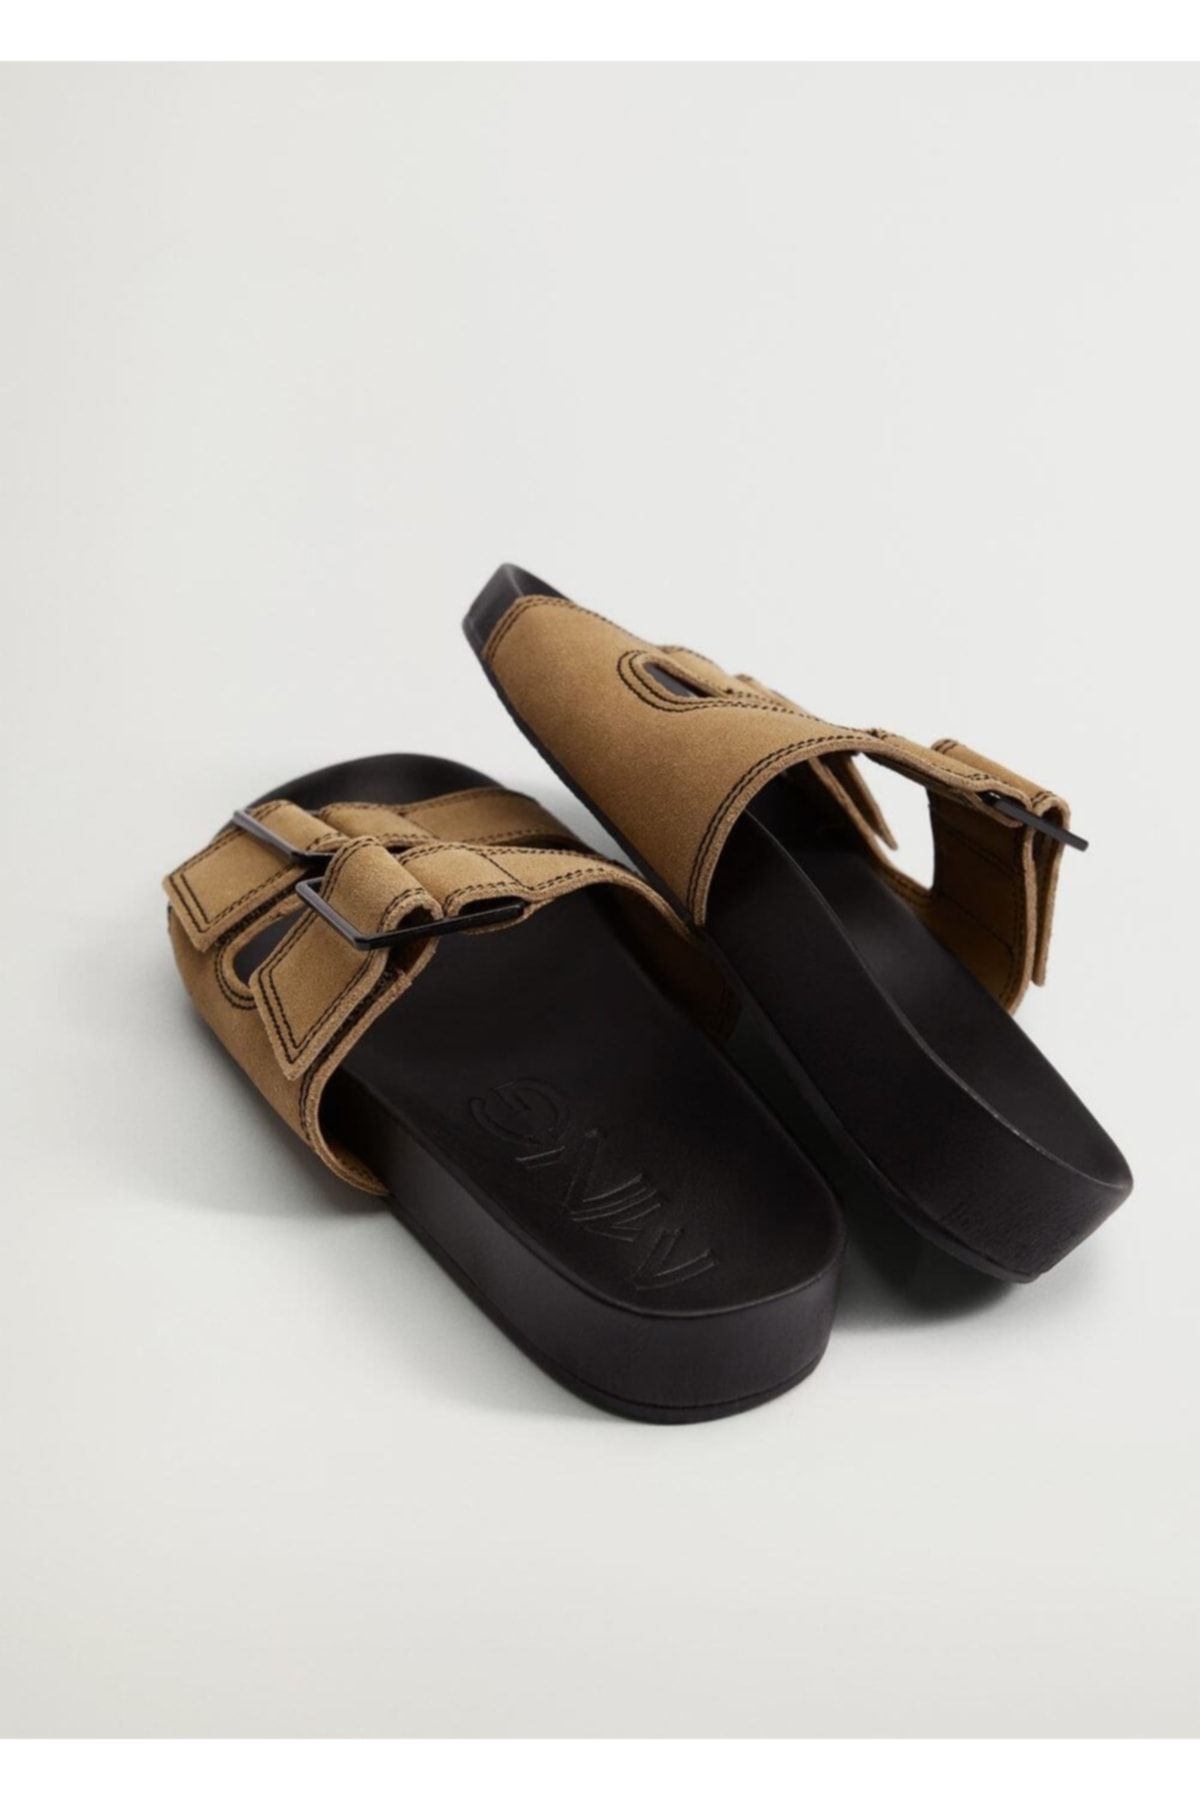 MANGO Kadın  Kahverengi Deri Bantlı Sandalet